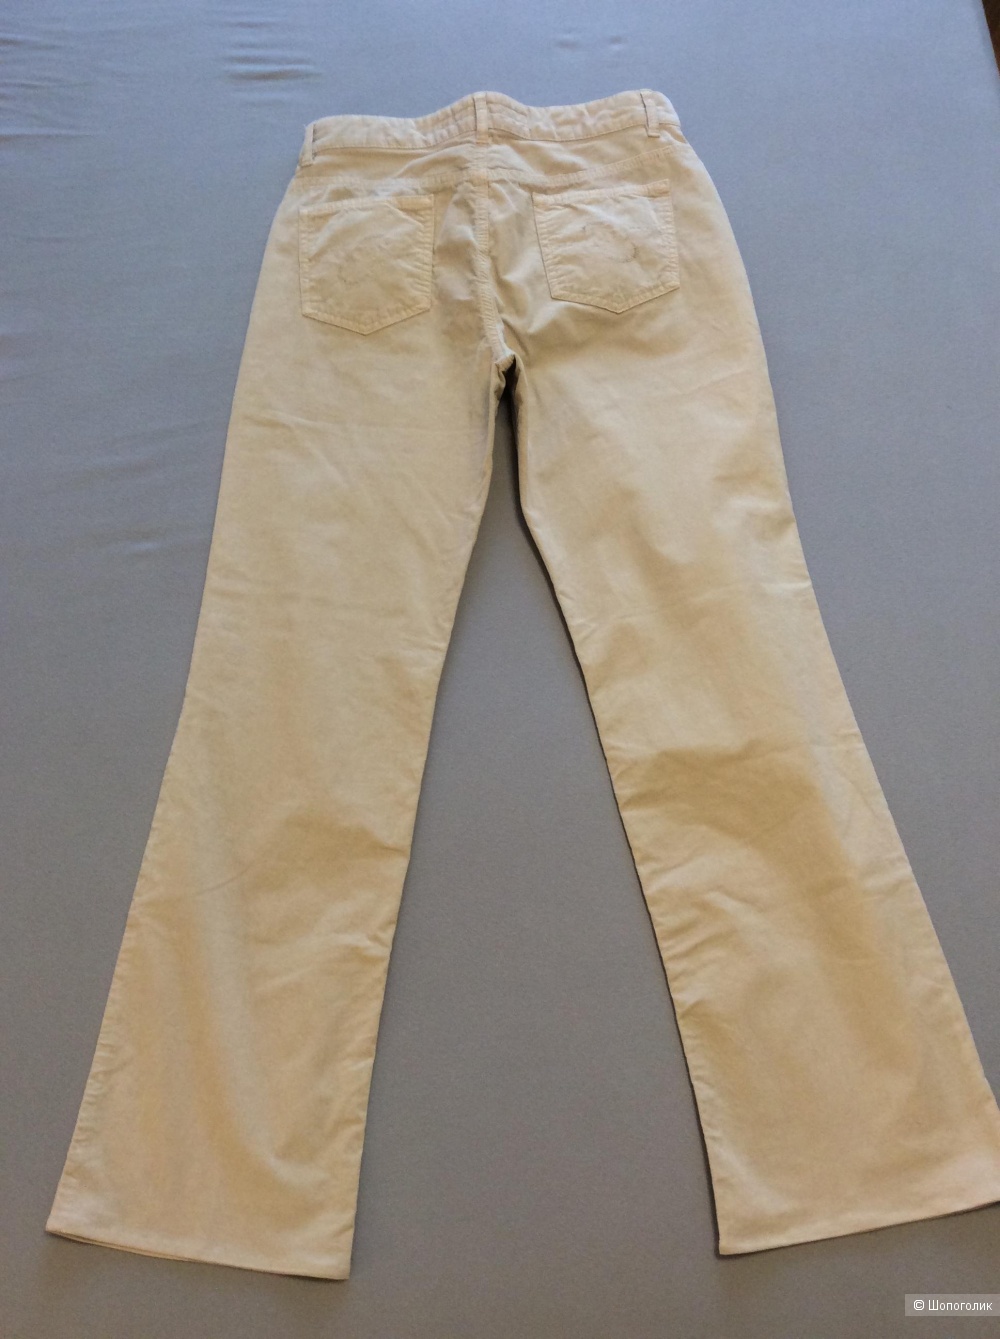 Брюки (джинсы) ESCADA SPORT, модель Linda, р.40 (на 46-48)